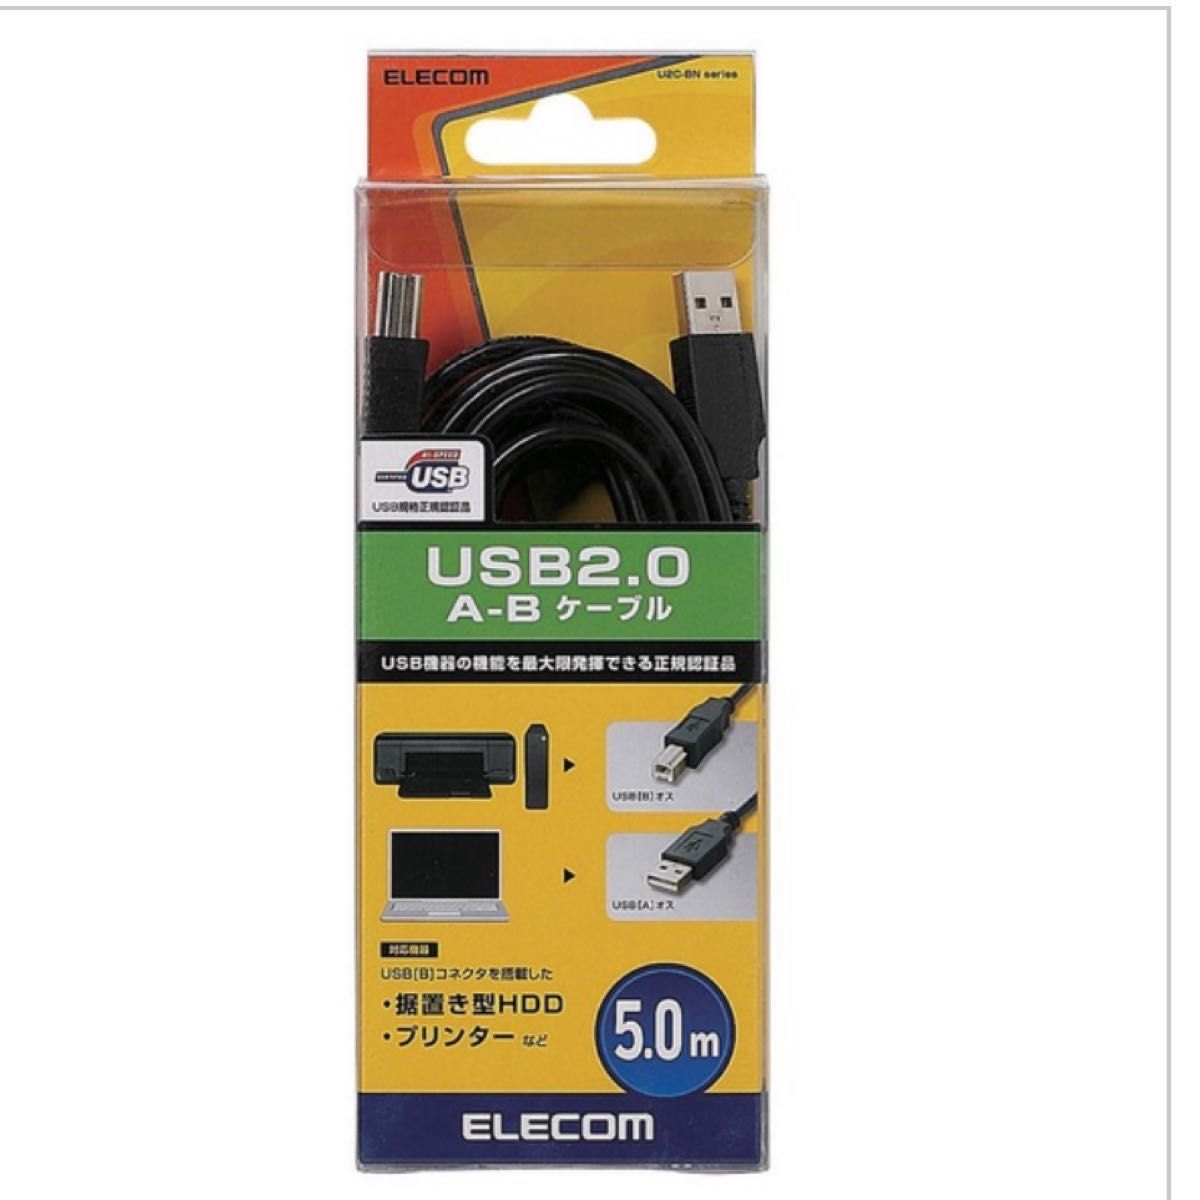 新品未開封エレコム USBケーブル B USB2.0 USB A オス to USB B オス 5m ブラック ELECOM 